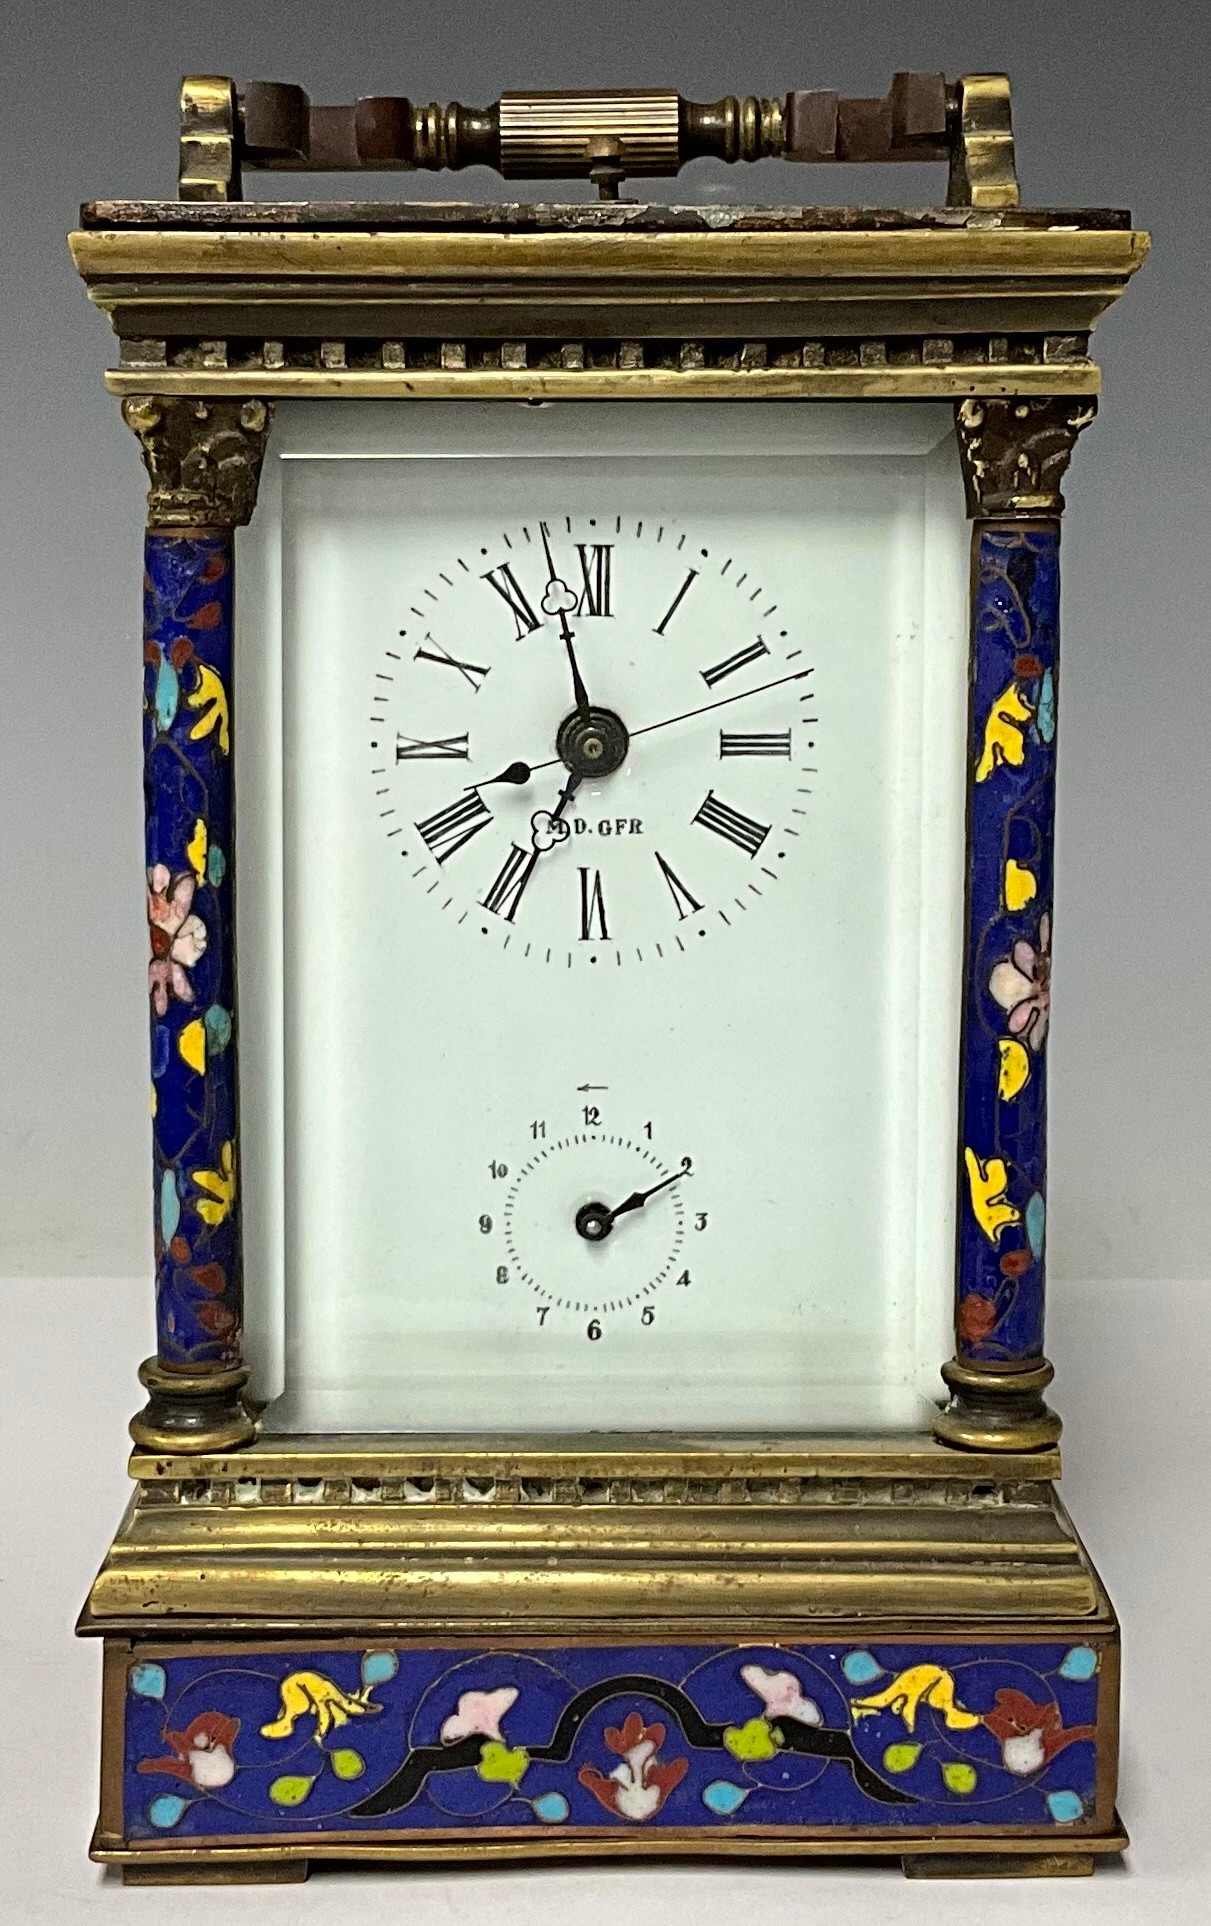 A large cloisonné enamel carriage clock, 19cm high excluding handle